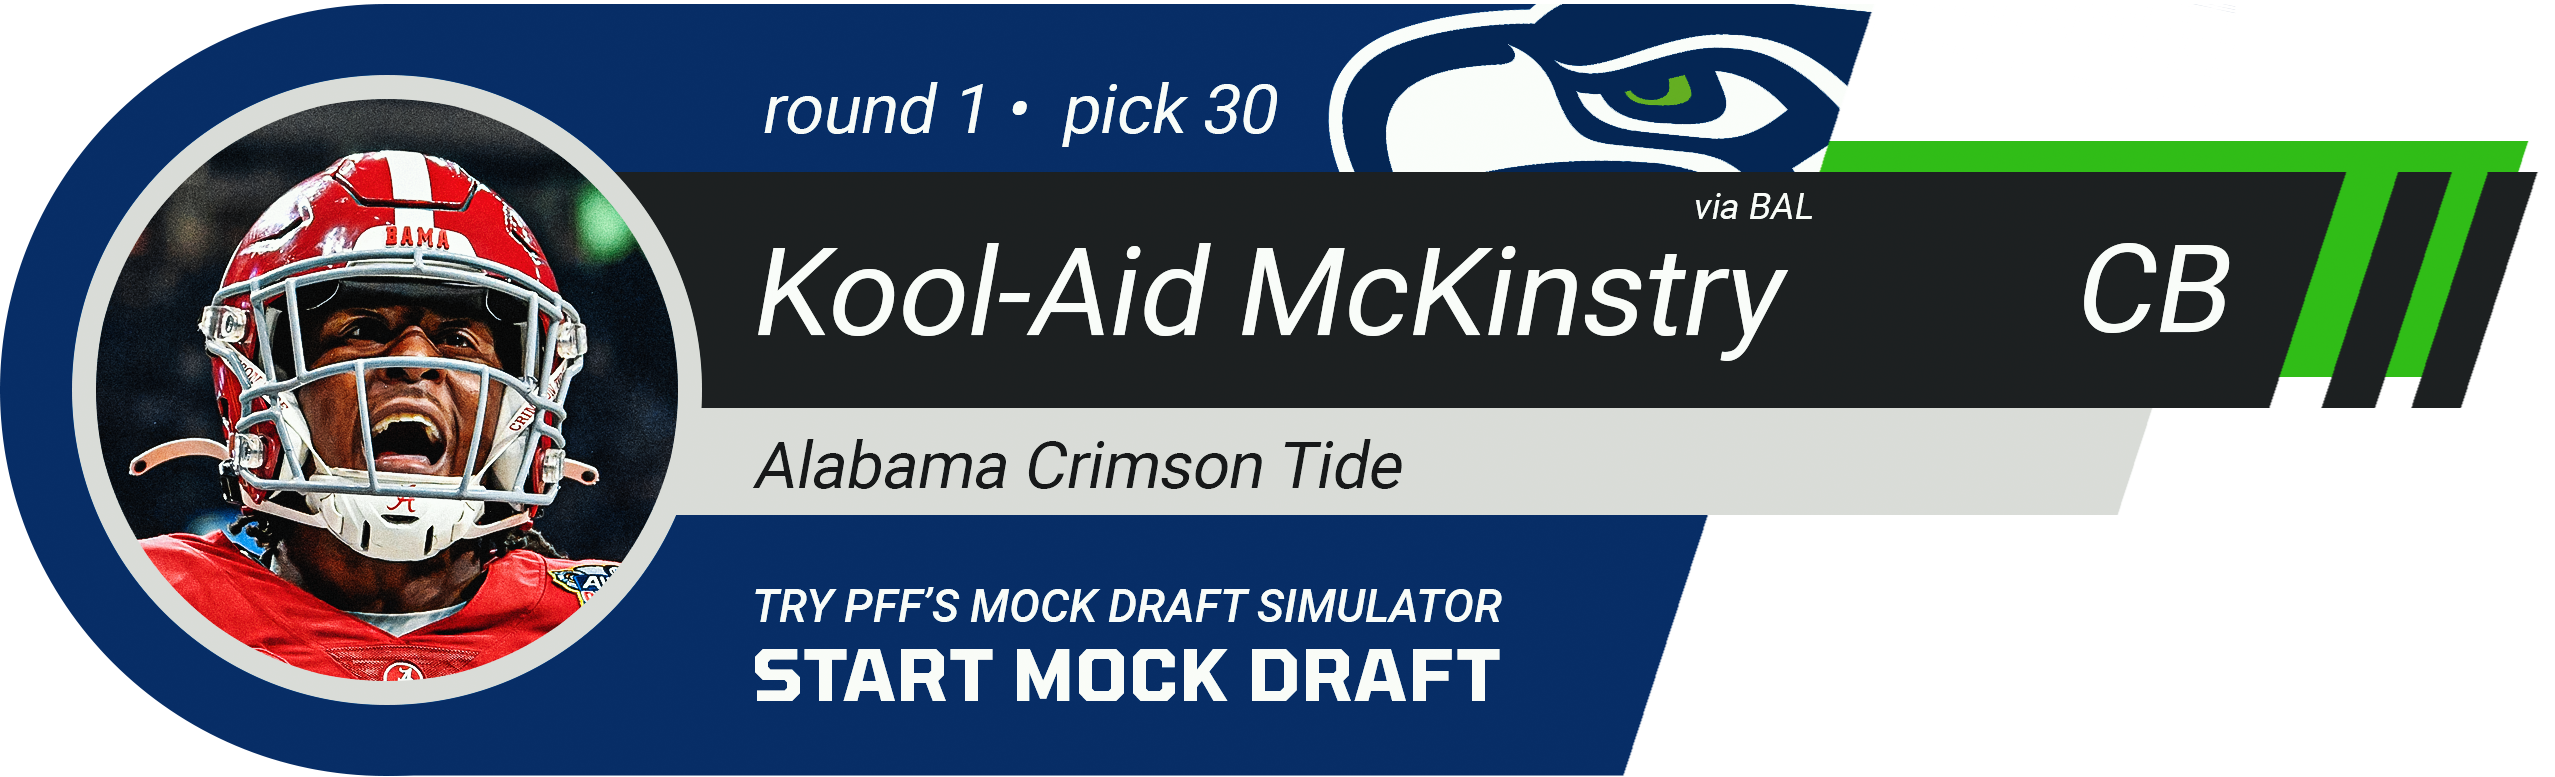 30. Seattle Seahawks: CB Kool-Aid McKinstry, Alabama